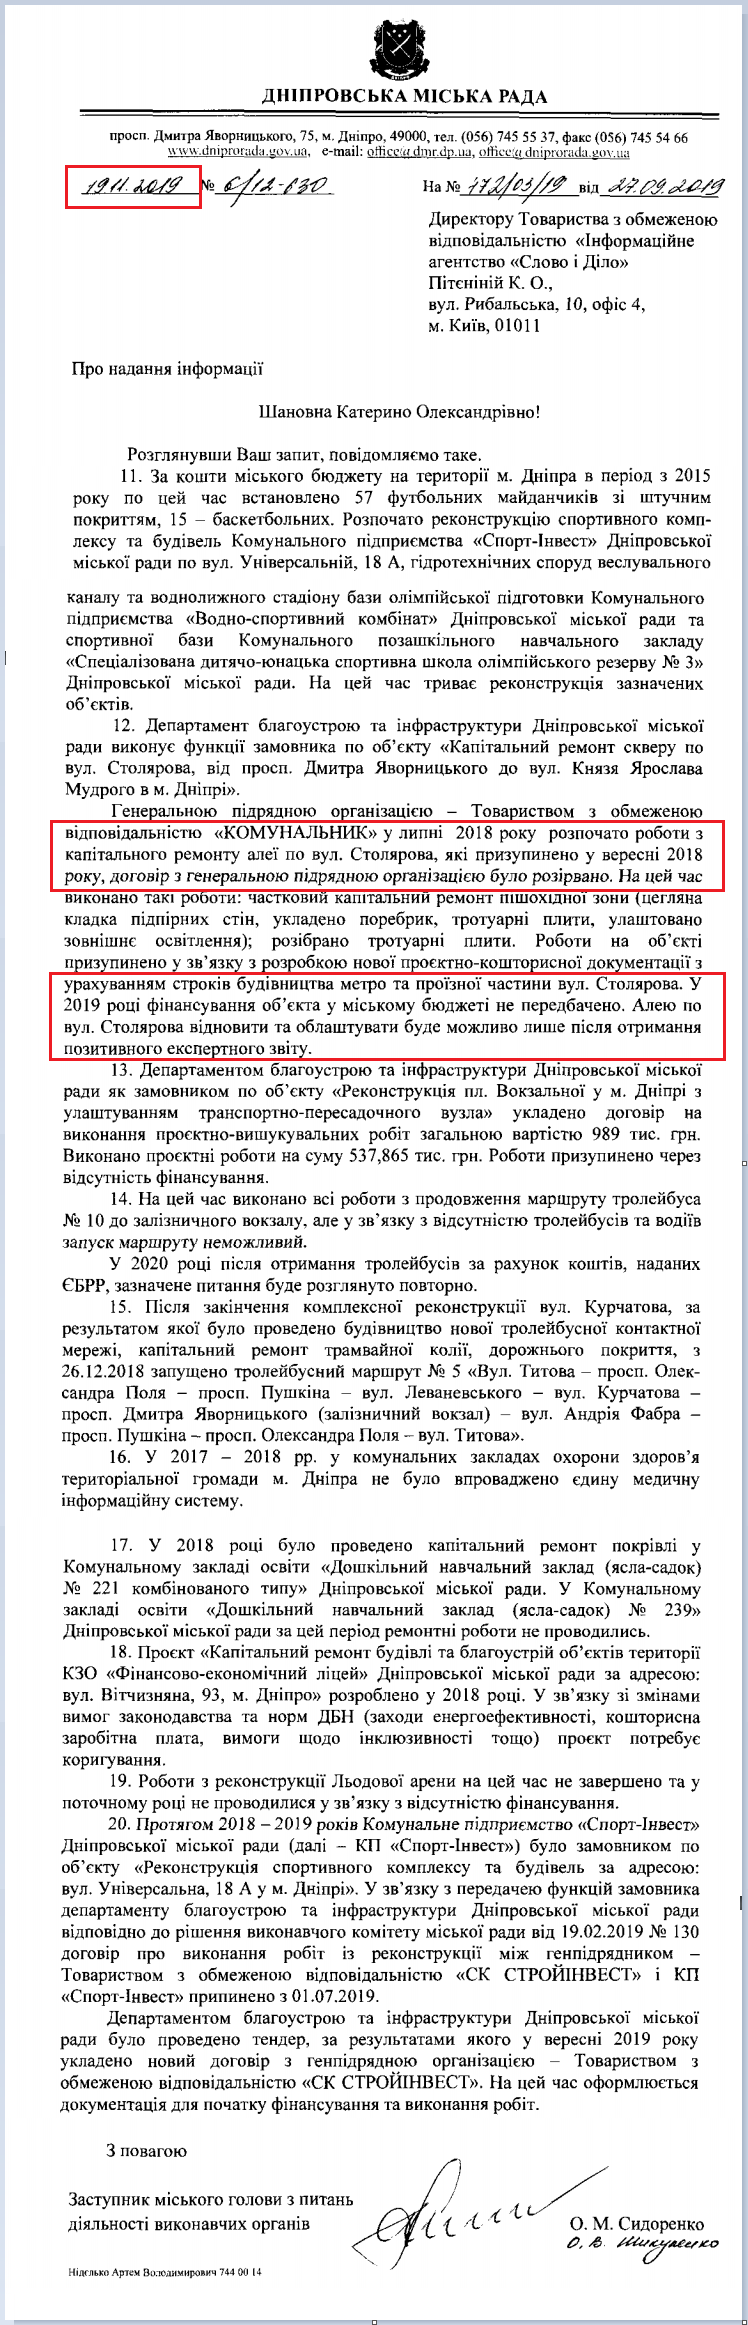 Лист Дніпровської МР від 19 листопада 2019 року